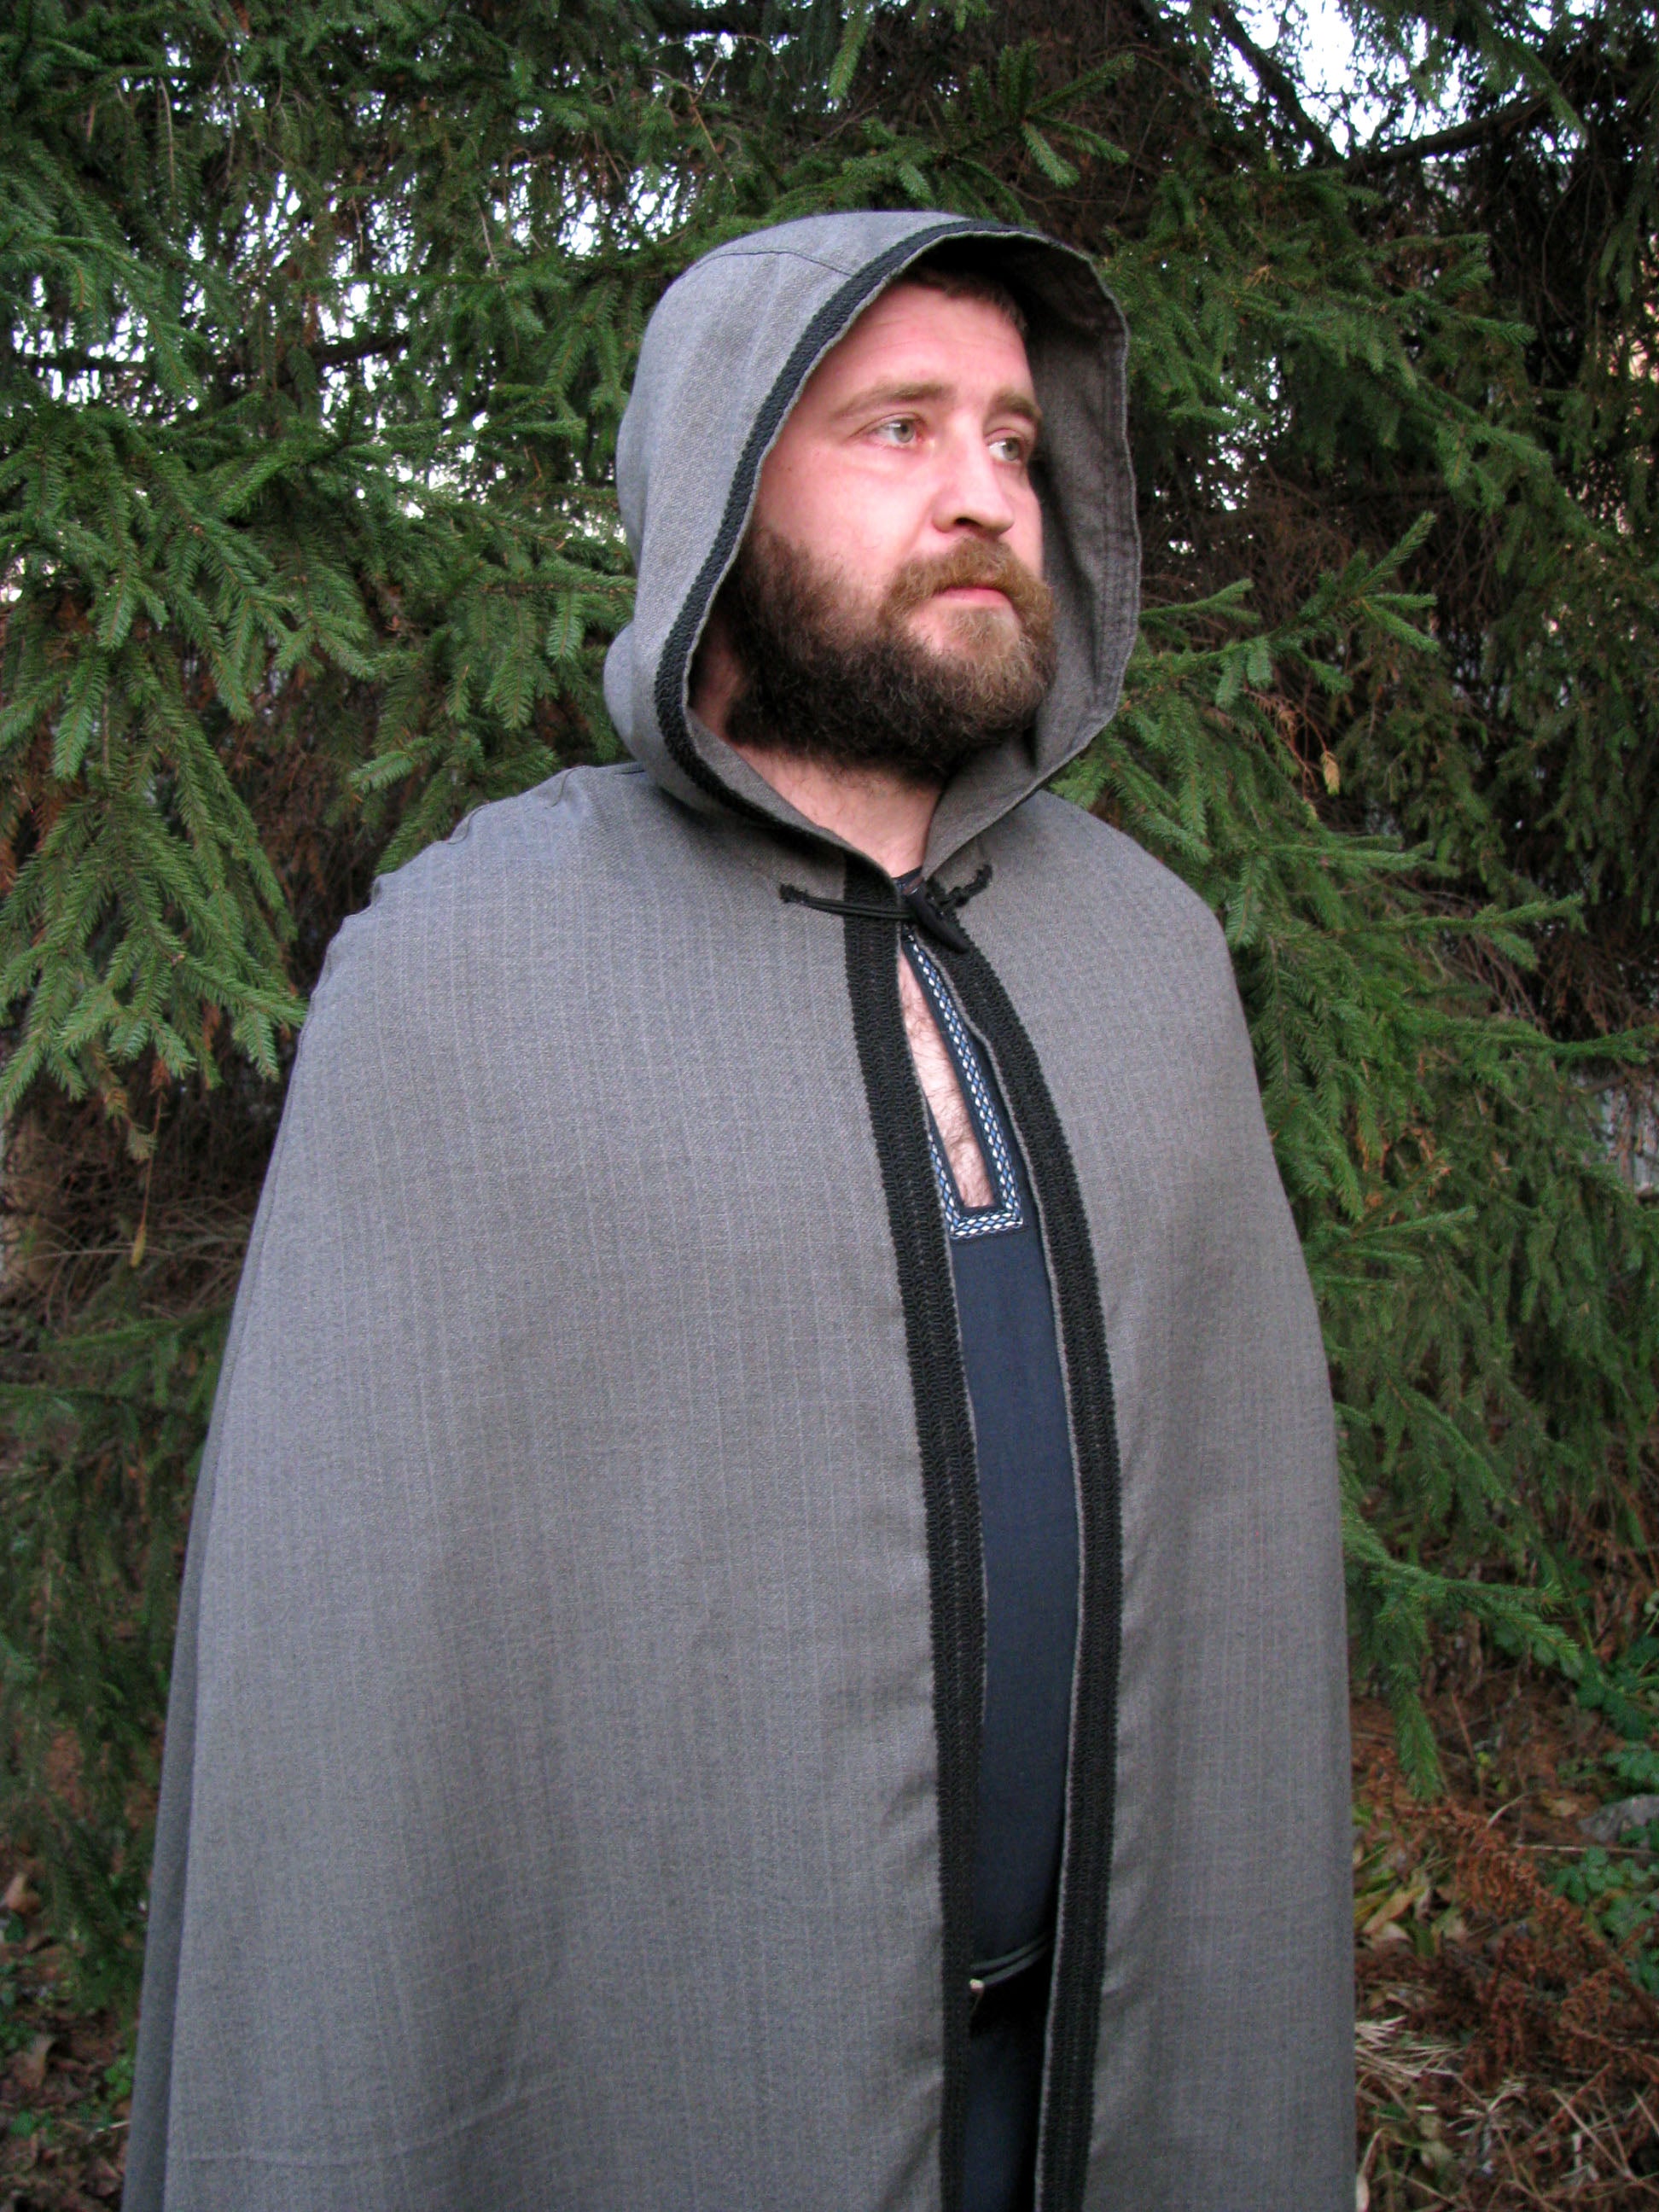 Medieval Hooded Cloak